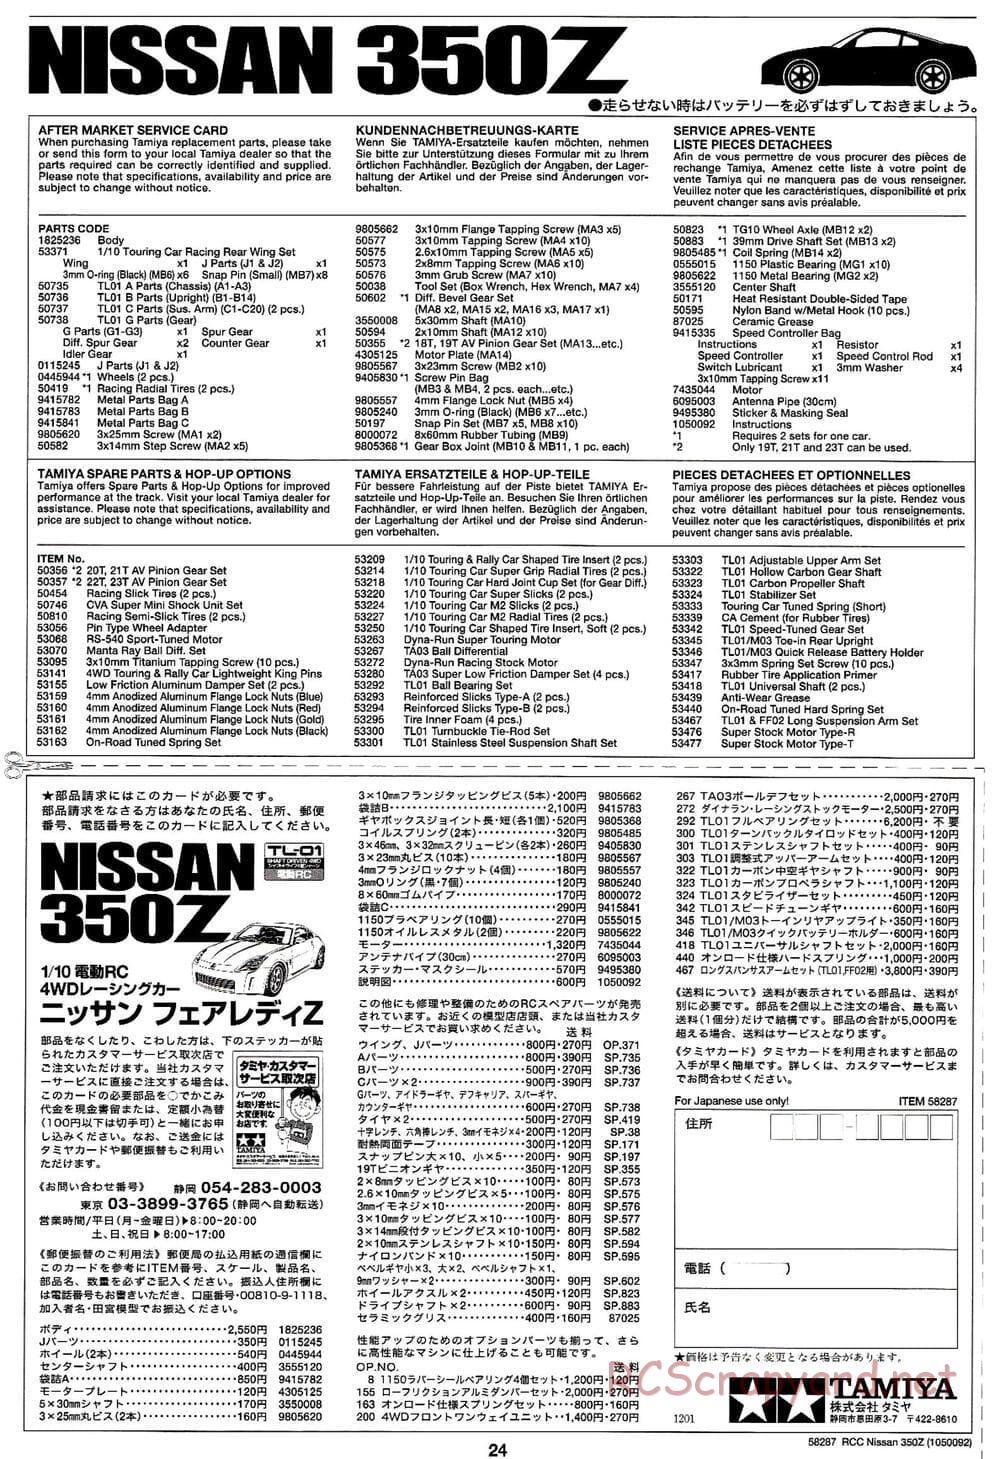 Tamiya - Nissan 350Z - TL-01 Chassis - Manual - Page 24